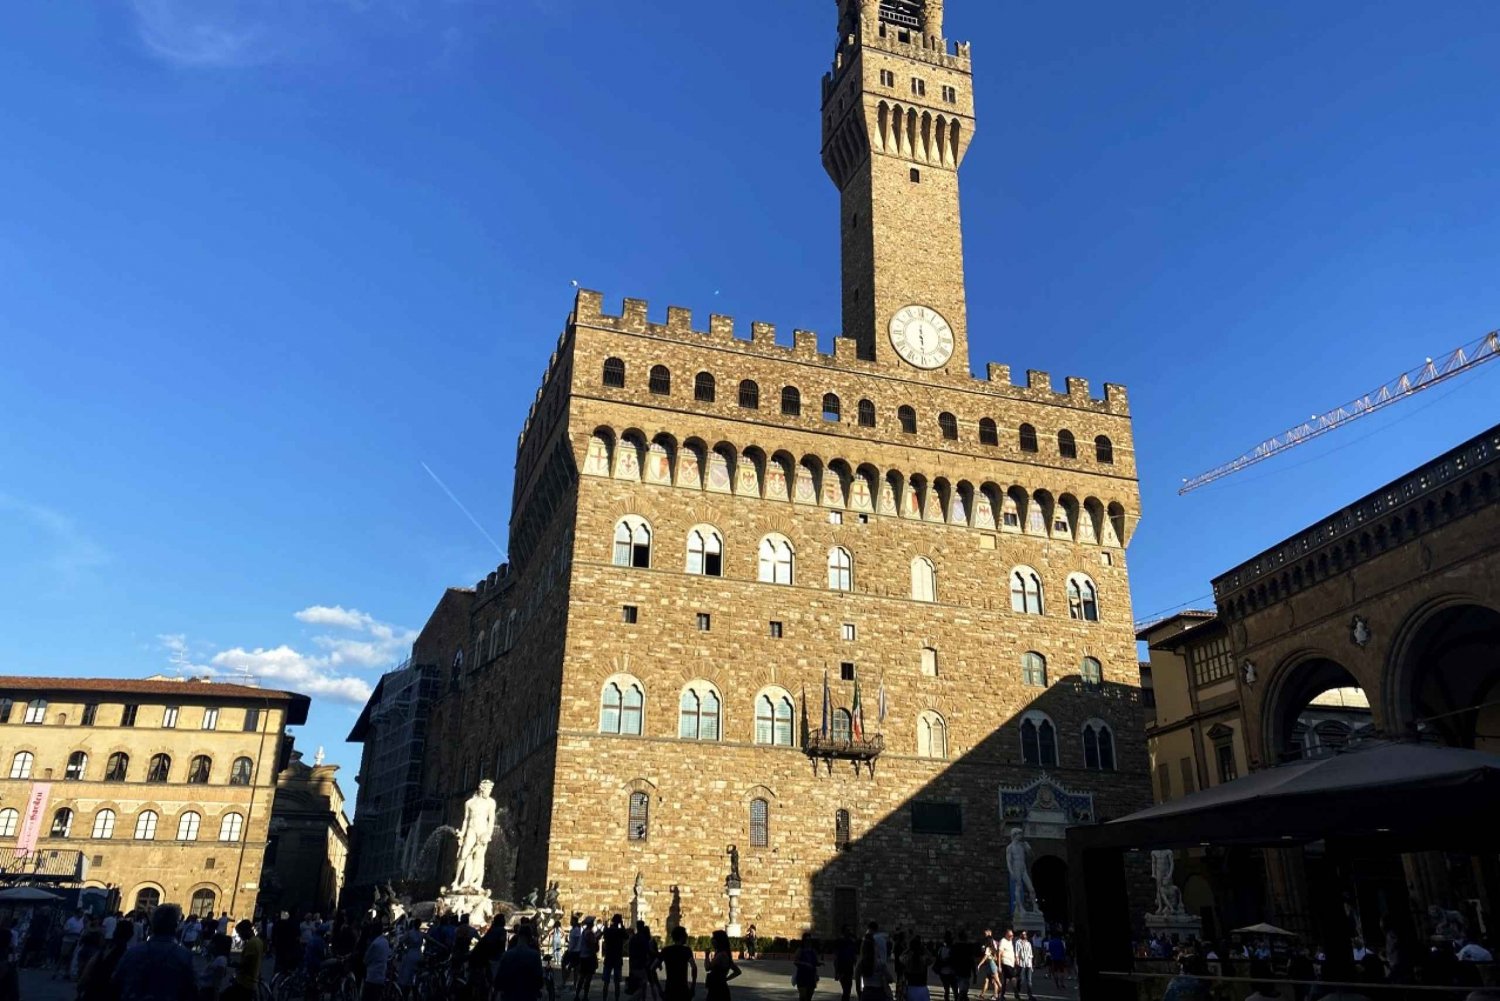 Renaissance Walking Tour of Florence